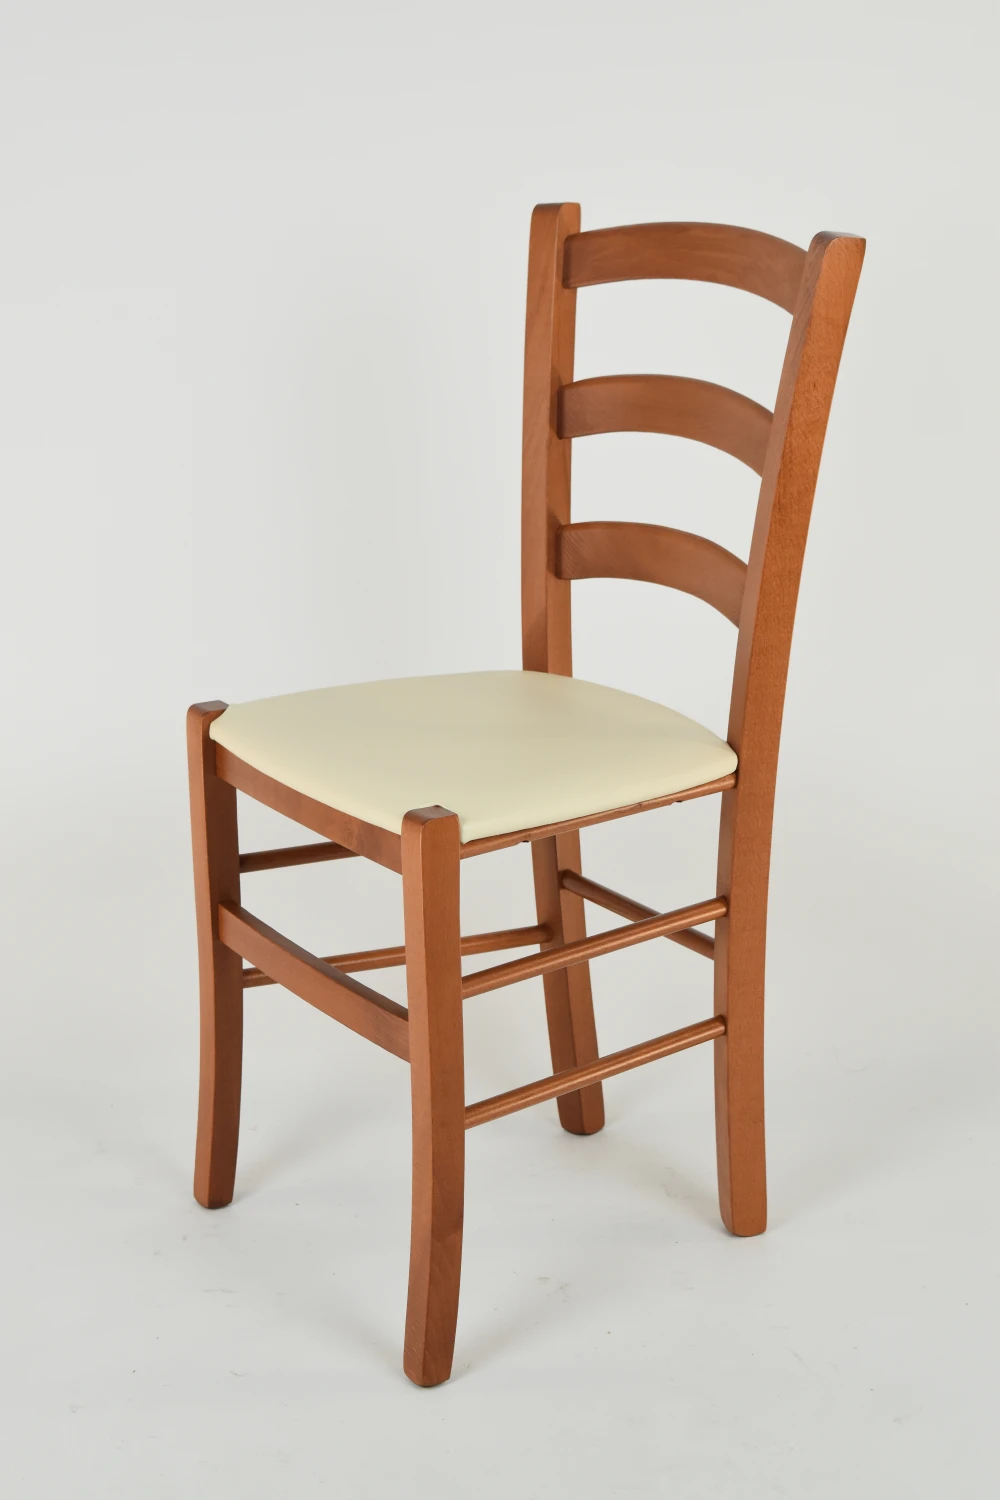 Tommychairs-набор из 2 стульев Venice для кухни структура бука в вишный цвет сиденье